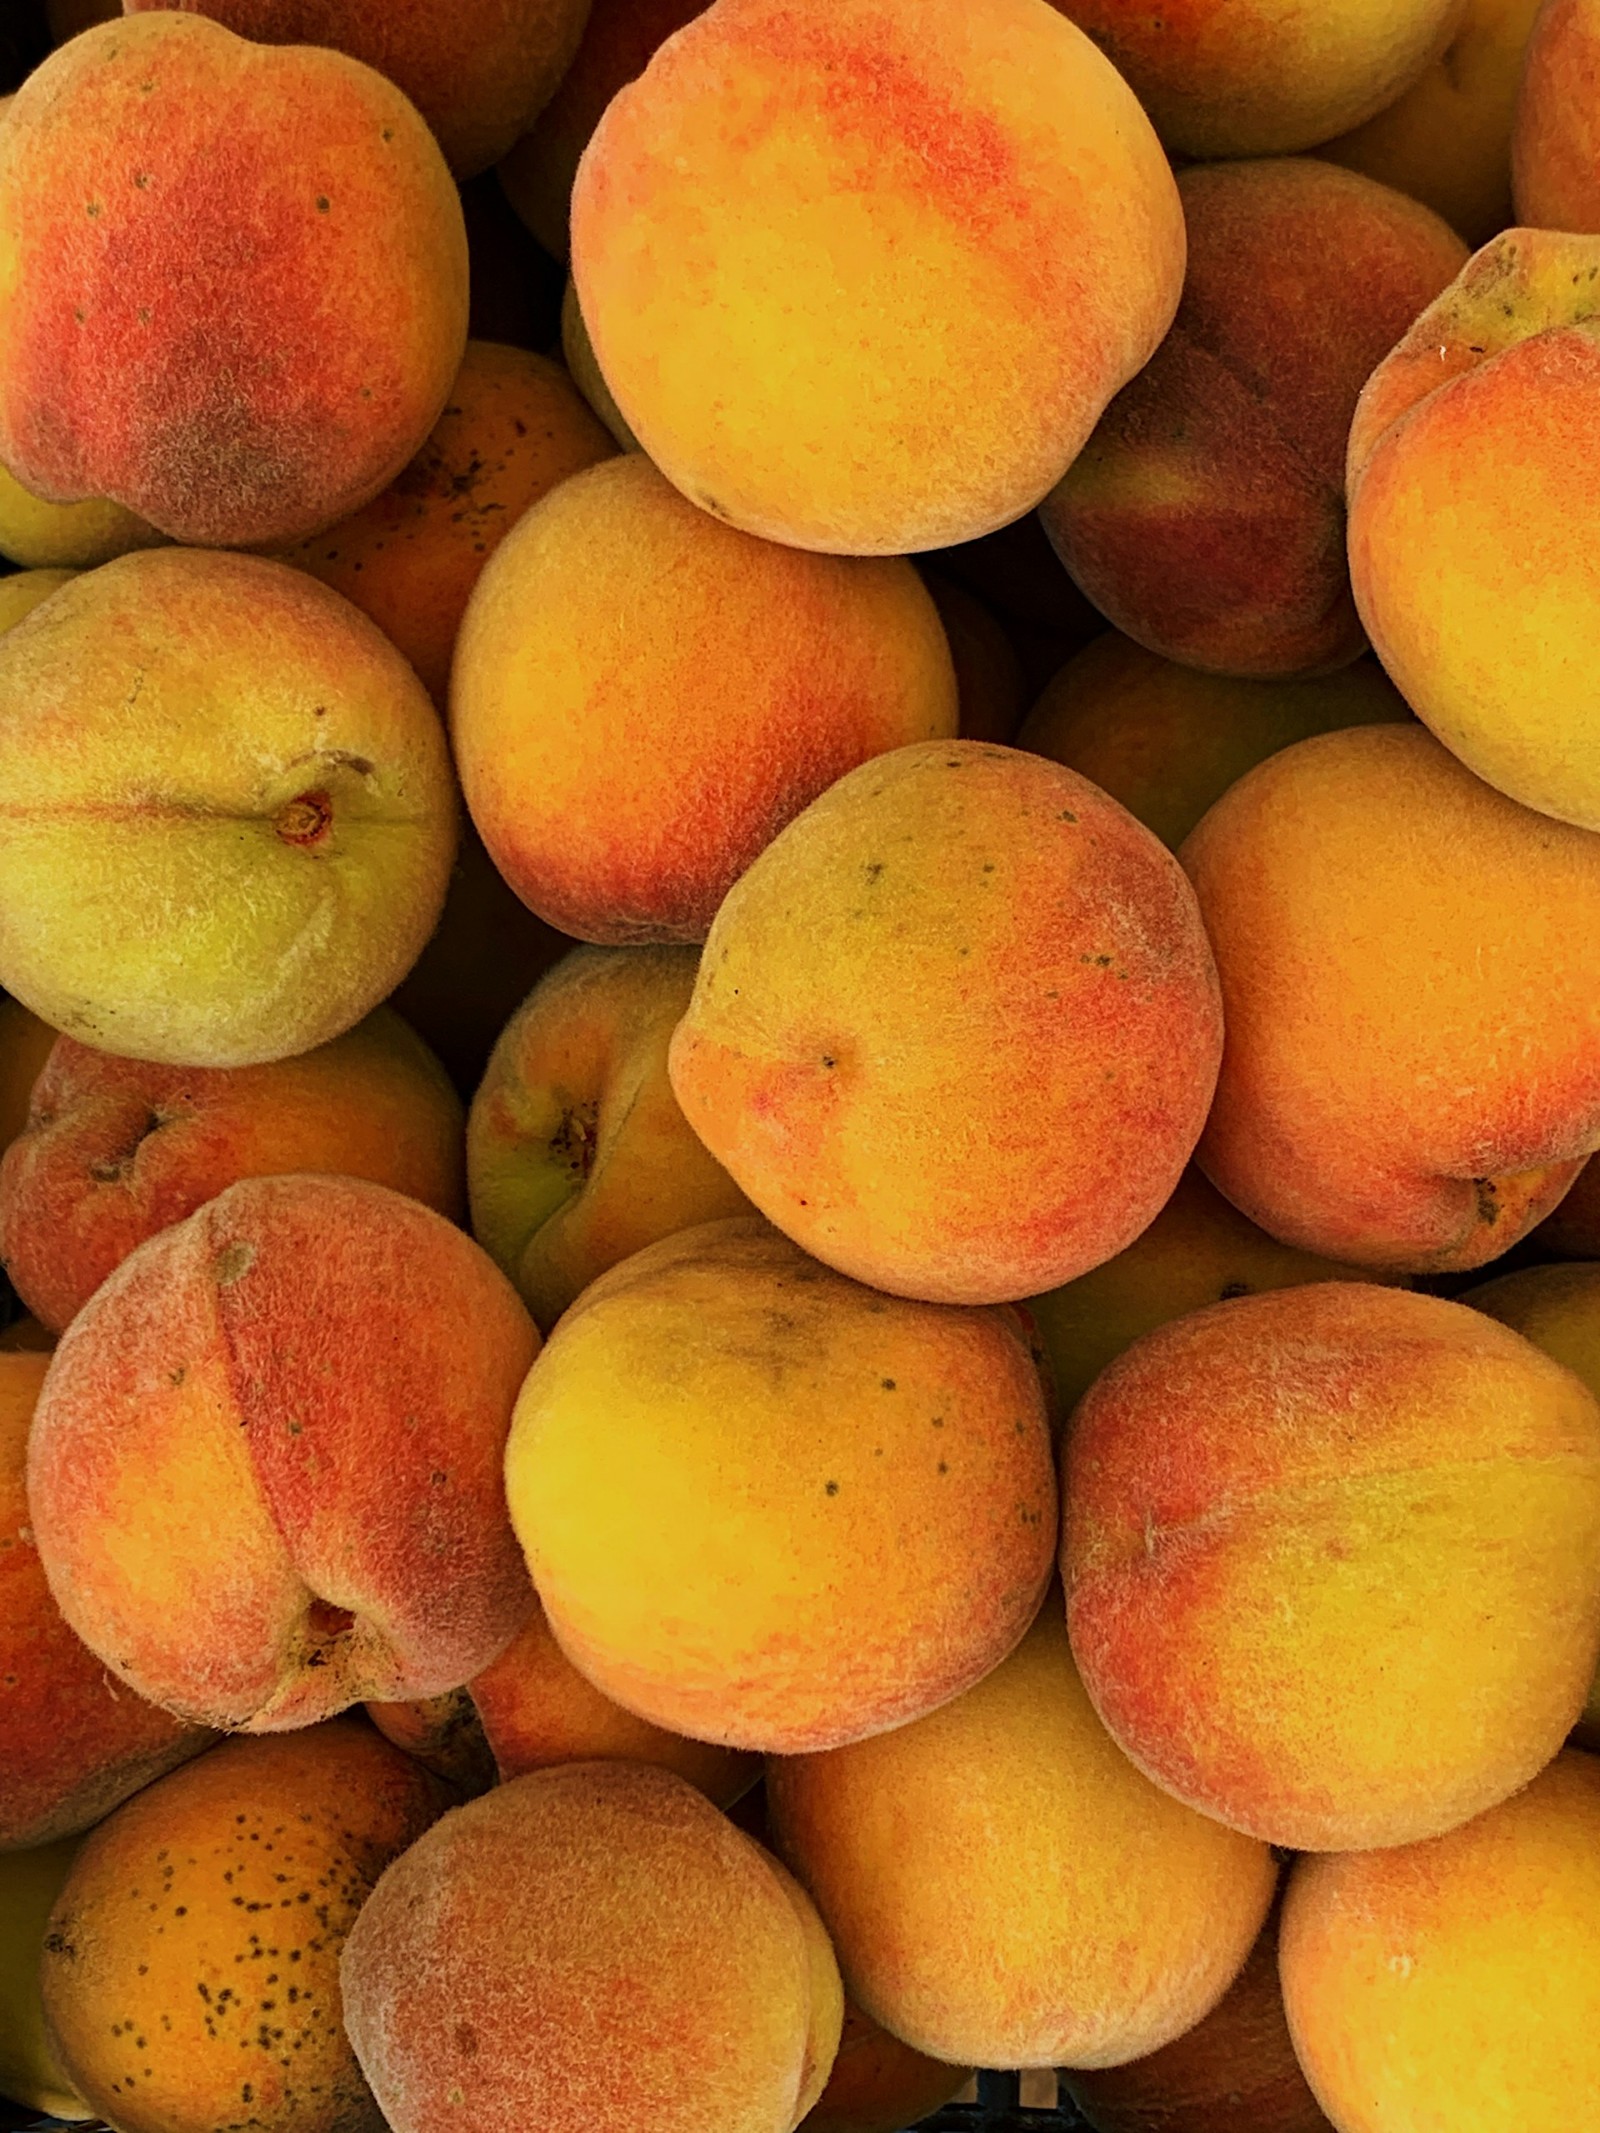 A closeup of peaches.